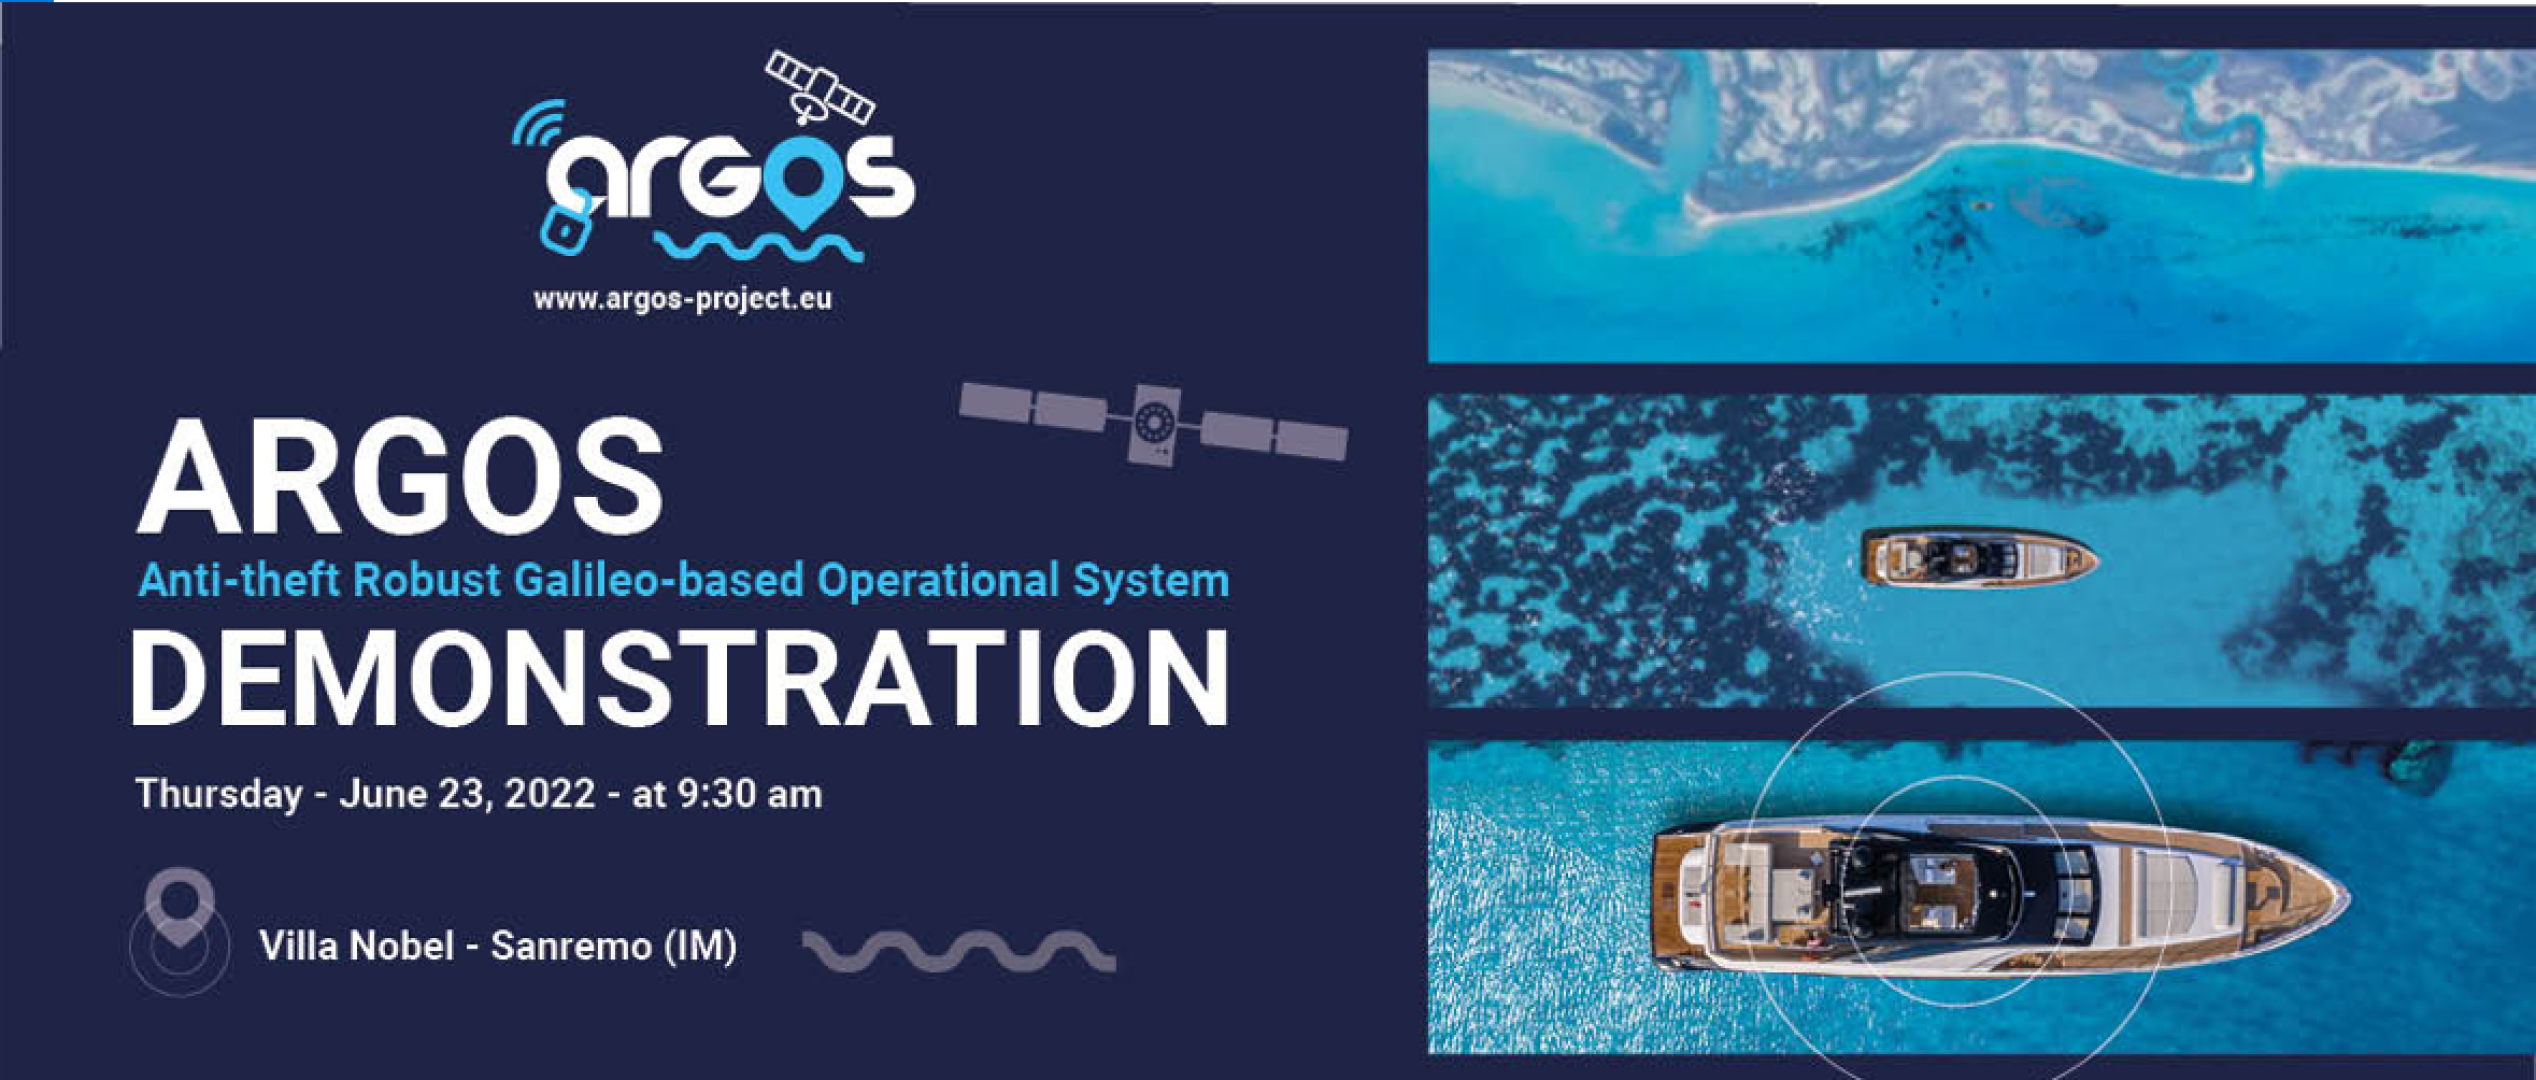 Arriva Argos, la nuova tecnologia che protegge le imbarcazioni da hacker, furti e disancoraggio